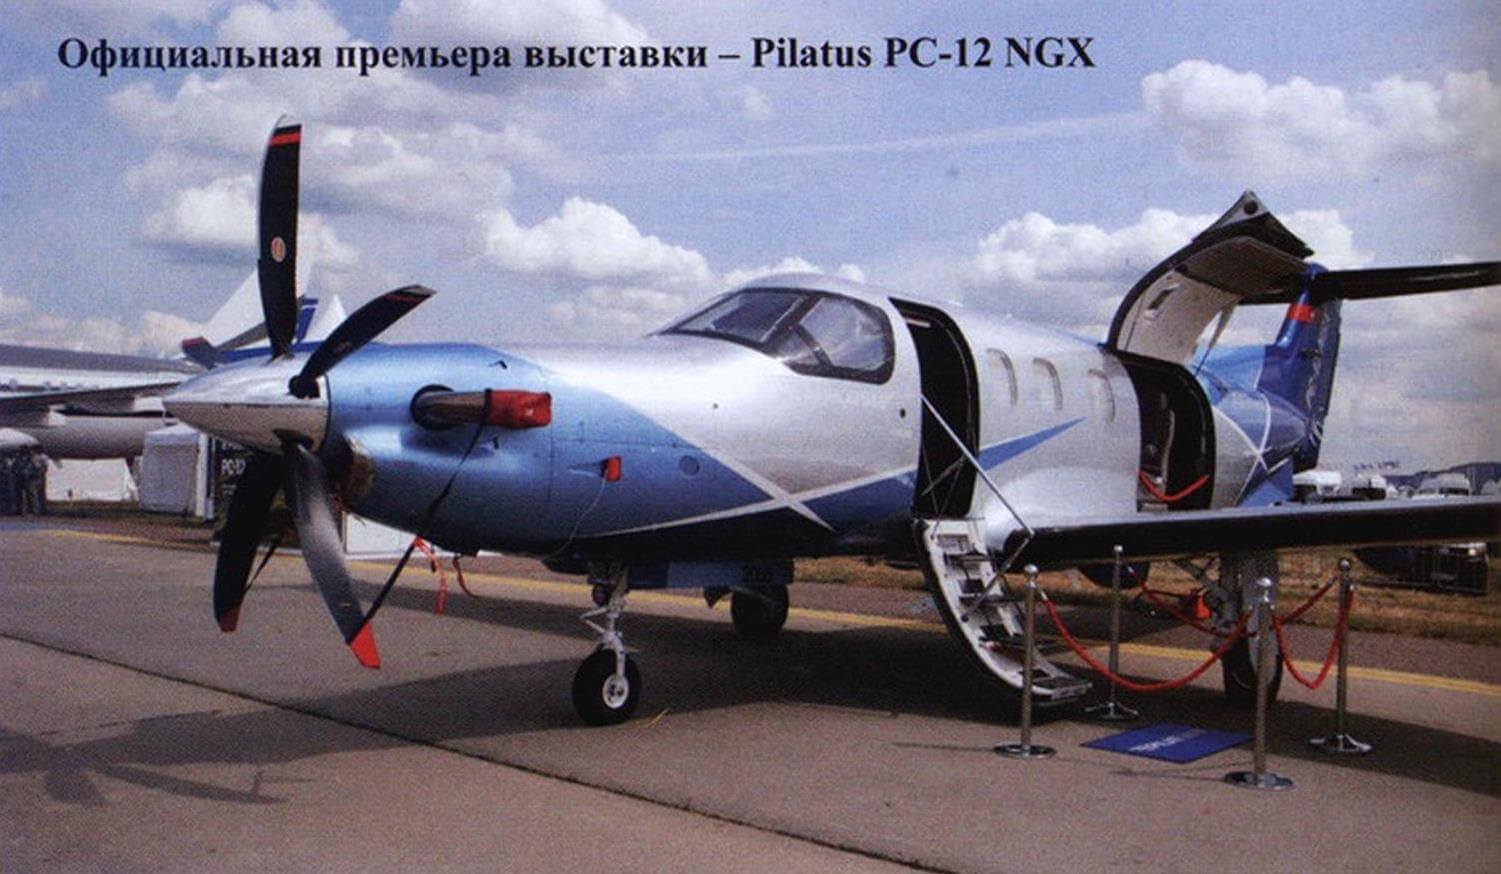 Официальная премьера выставки - Pilatus PC-12 NGX